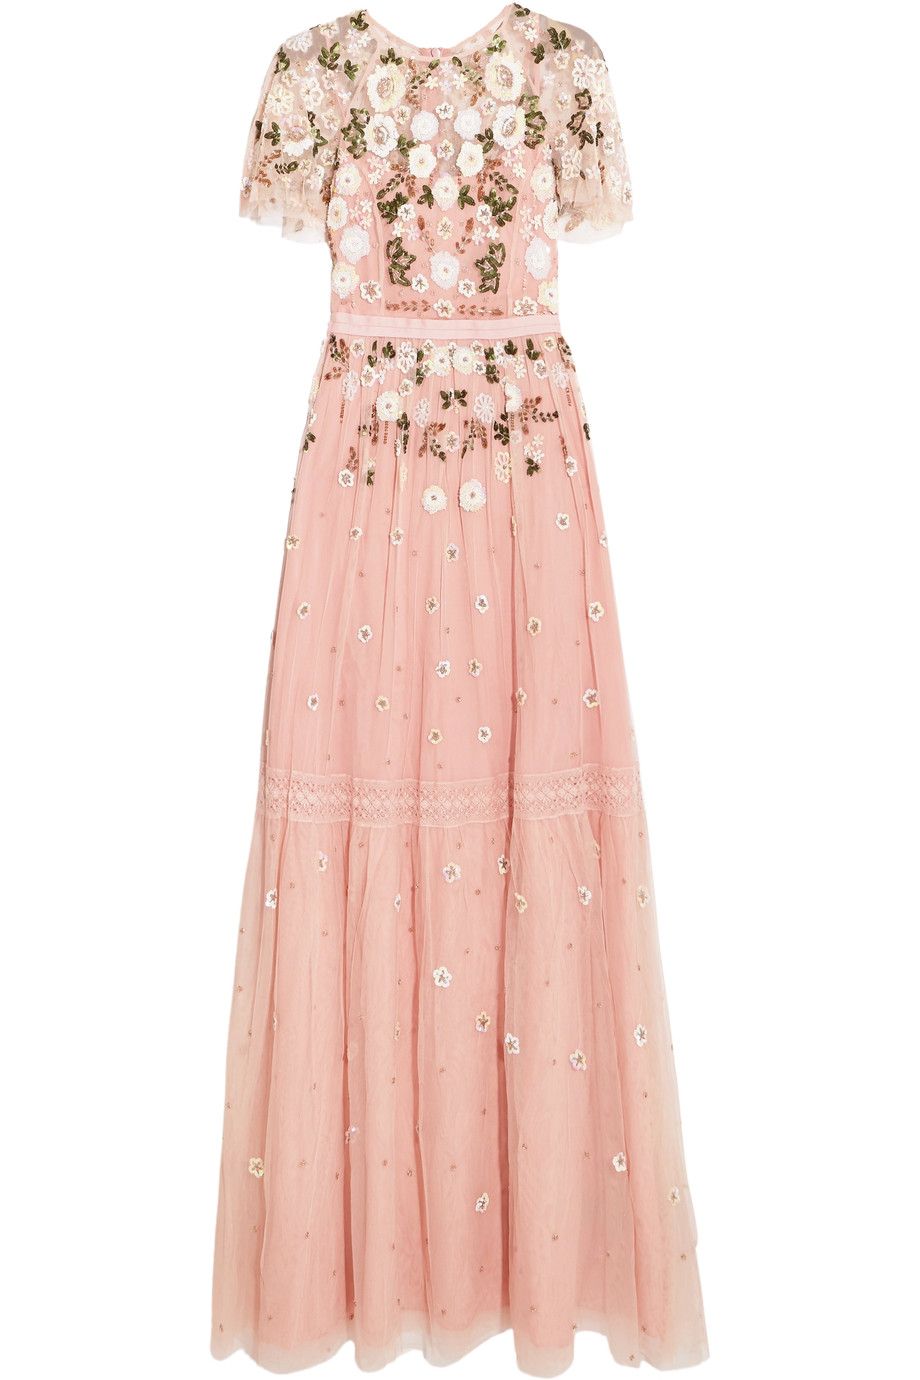 Abiti lunghi eleganti da cerimonia di sera come il vestito rosa con decori di  Needle & Thread